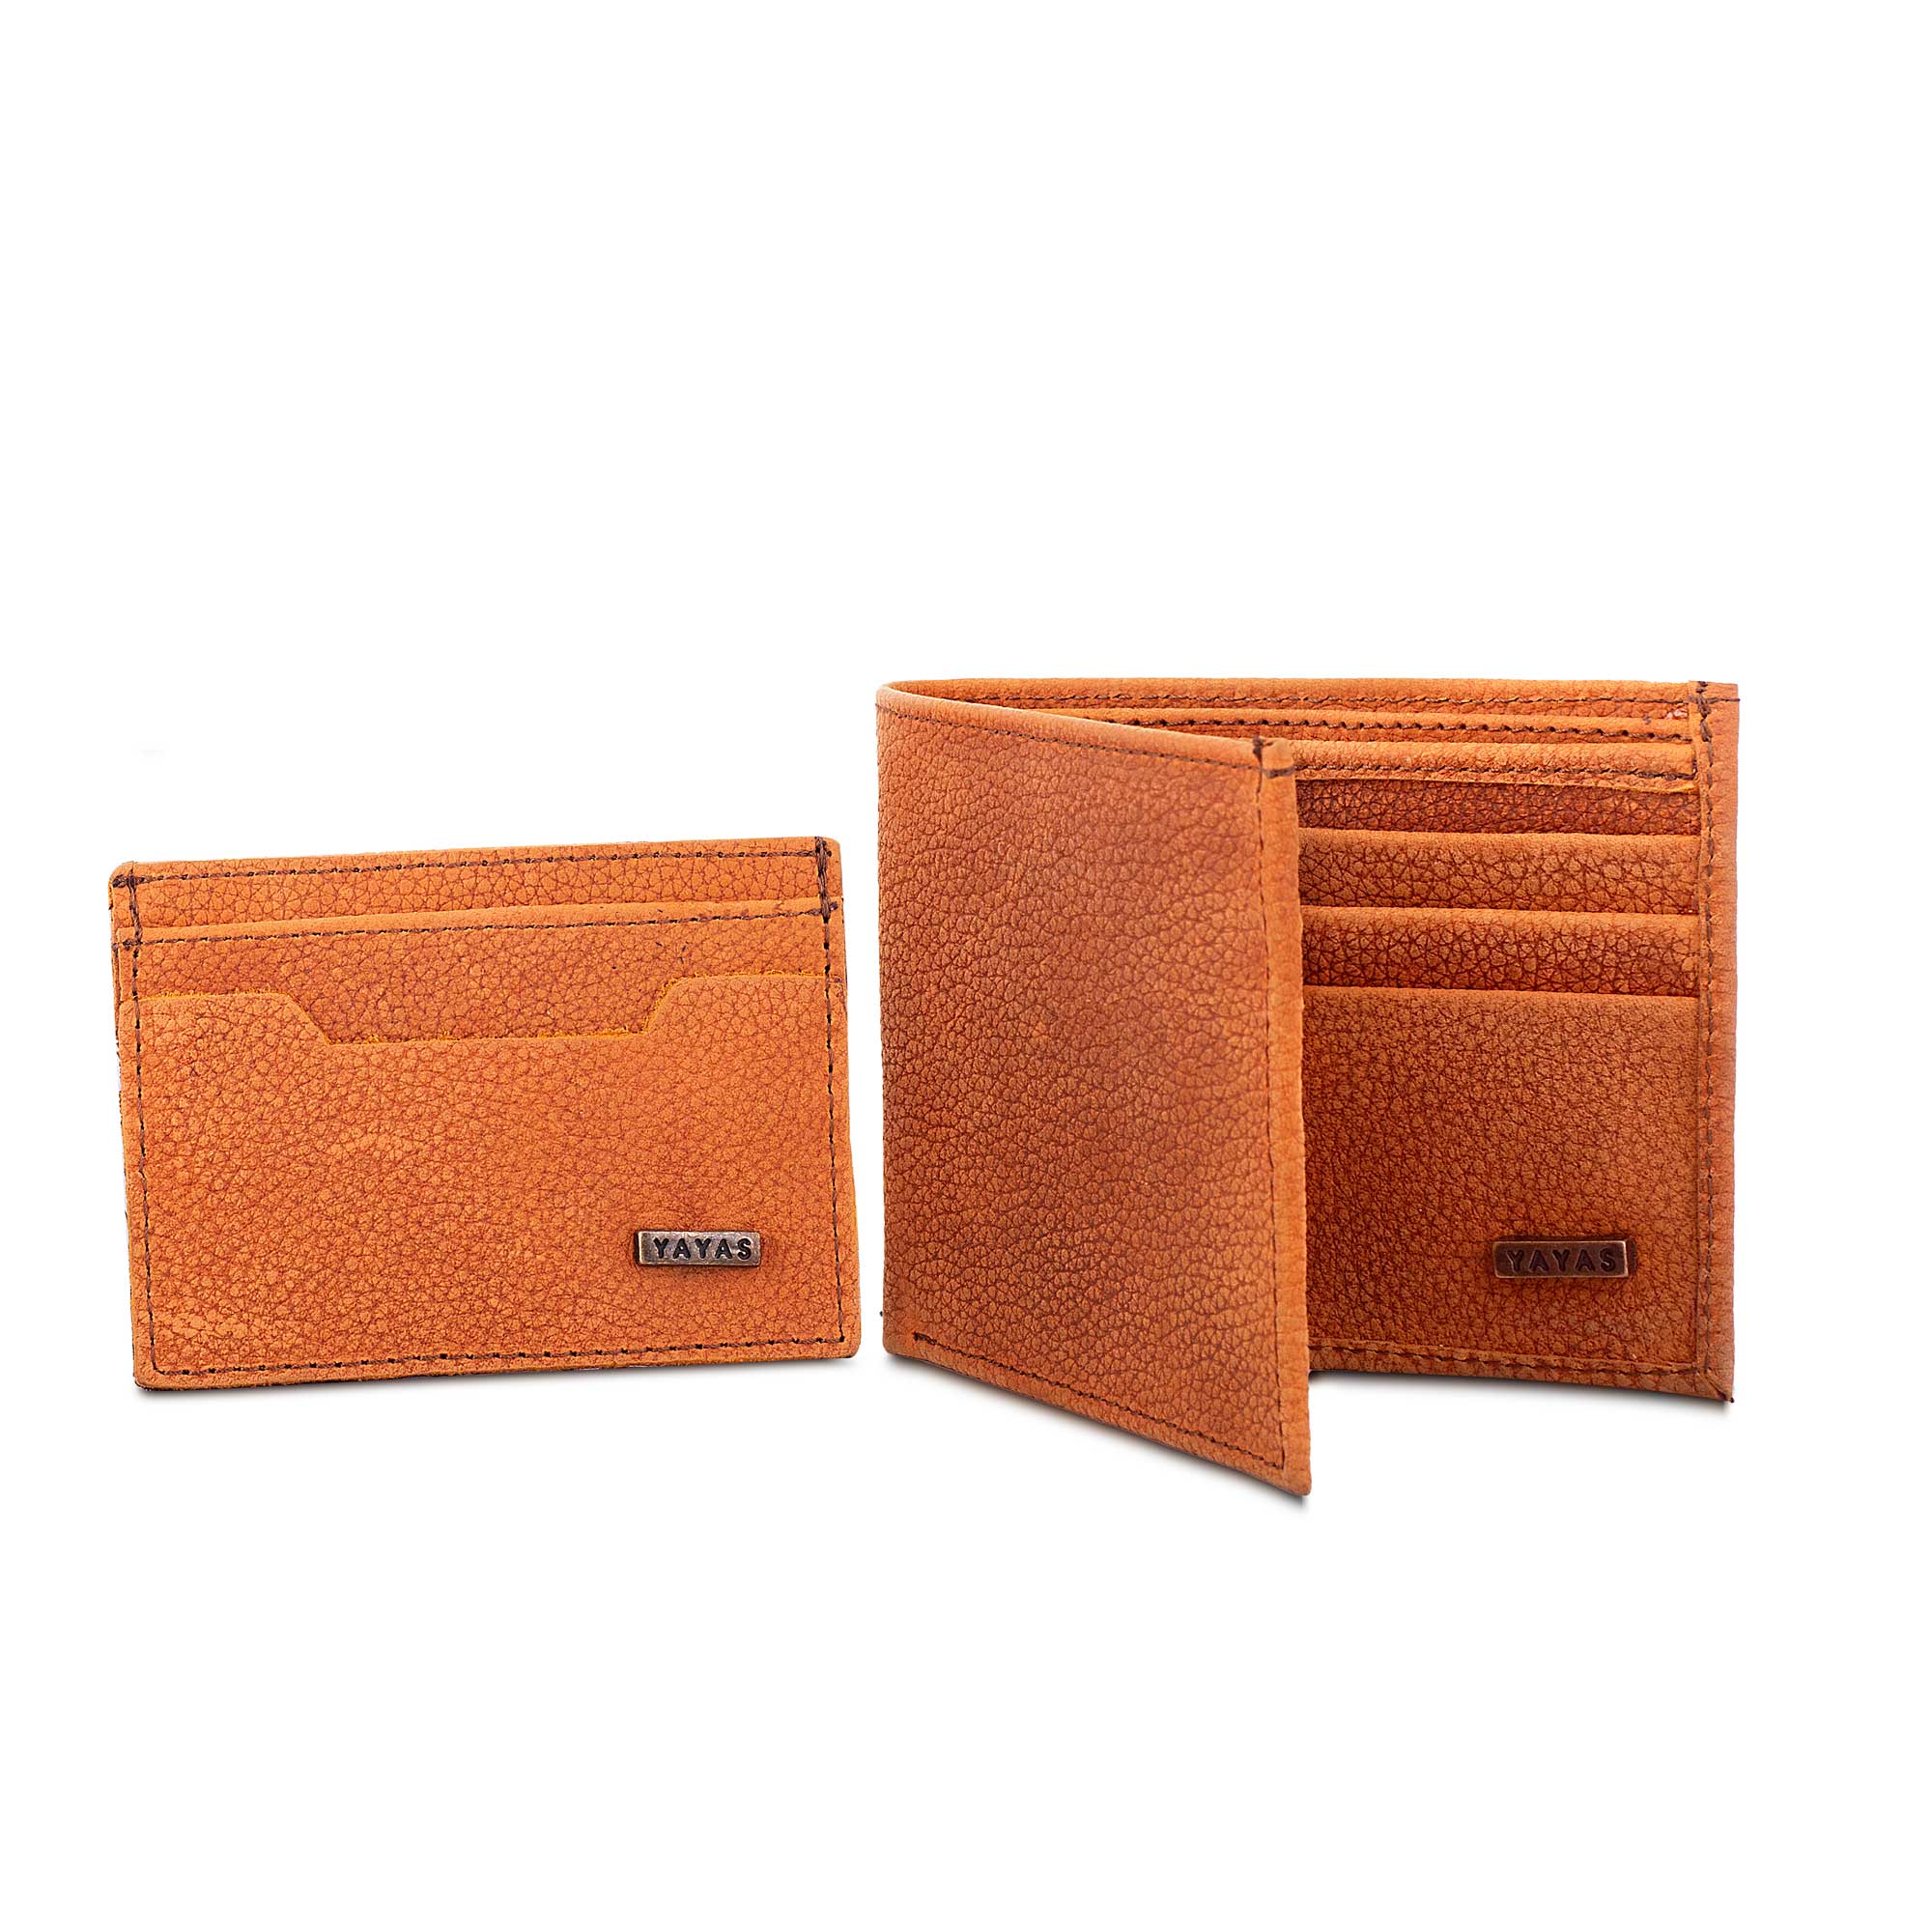 Cartera + Tarjetero de Piel / Leather Wallet + Card Holder